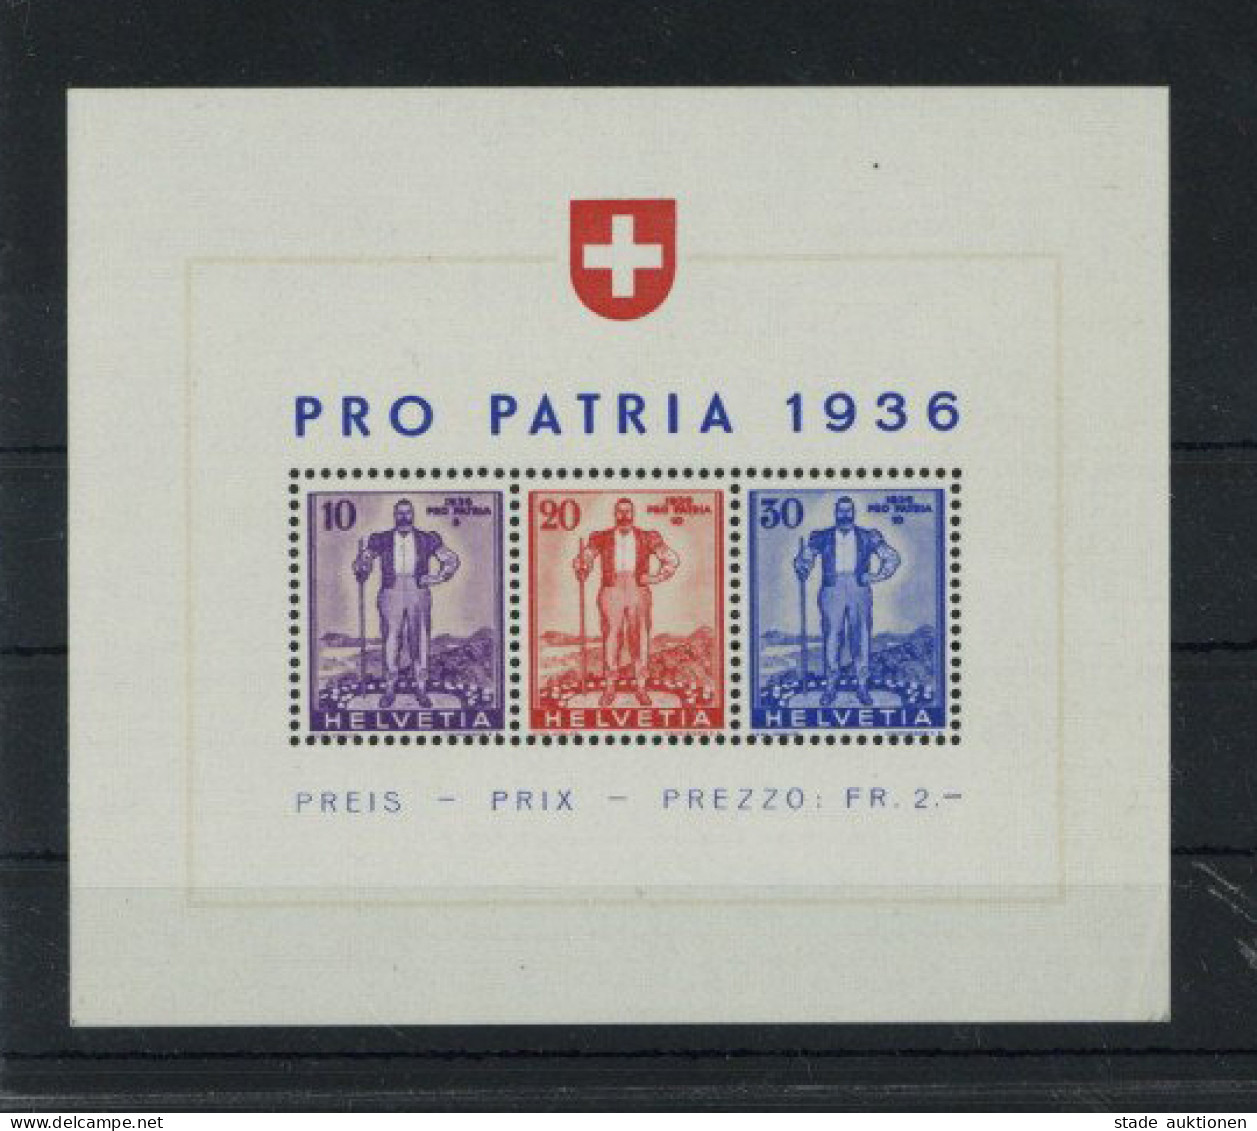 Schweiz Pro Patria 1936 Blockausgabe Freiburger Senn Postfrisch** Pracht - Sonstige - Europa